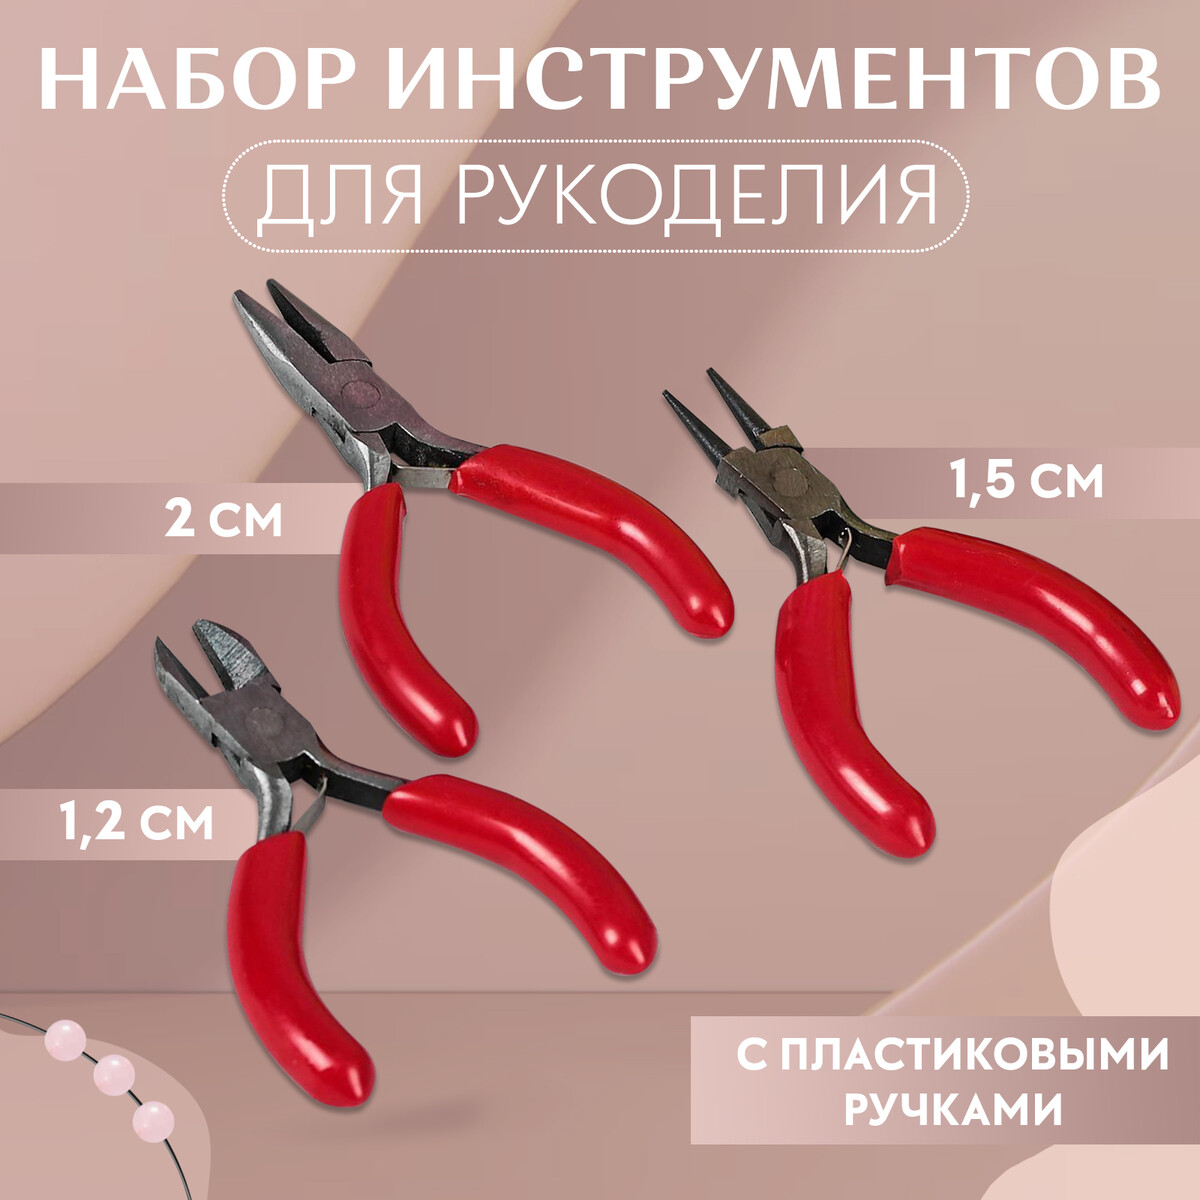 Набор инструментов для рукоделия: бокорезы - 7,5 см, круглогубцы - 8 см, тонкогубцы - 8 см, цвет серебряный/красный тонкогубцы 200 мм bartex стандарт 913018